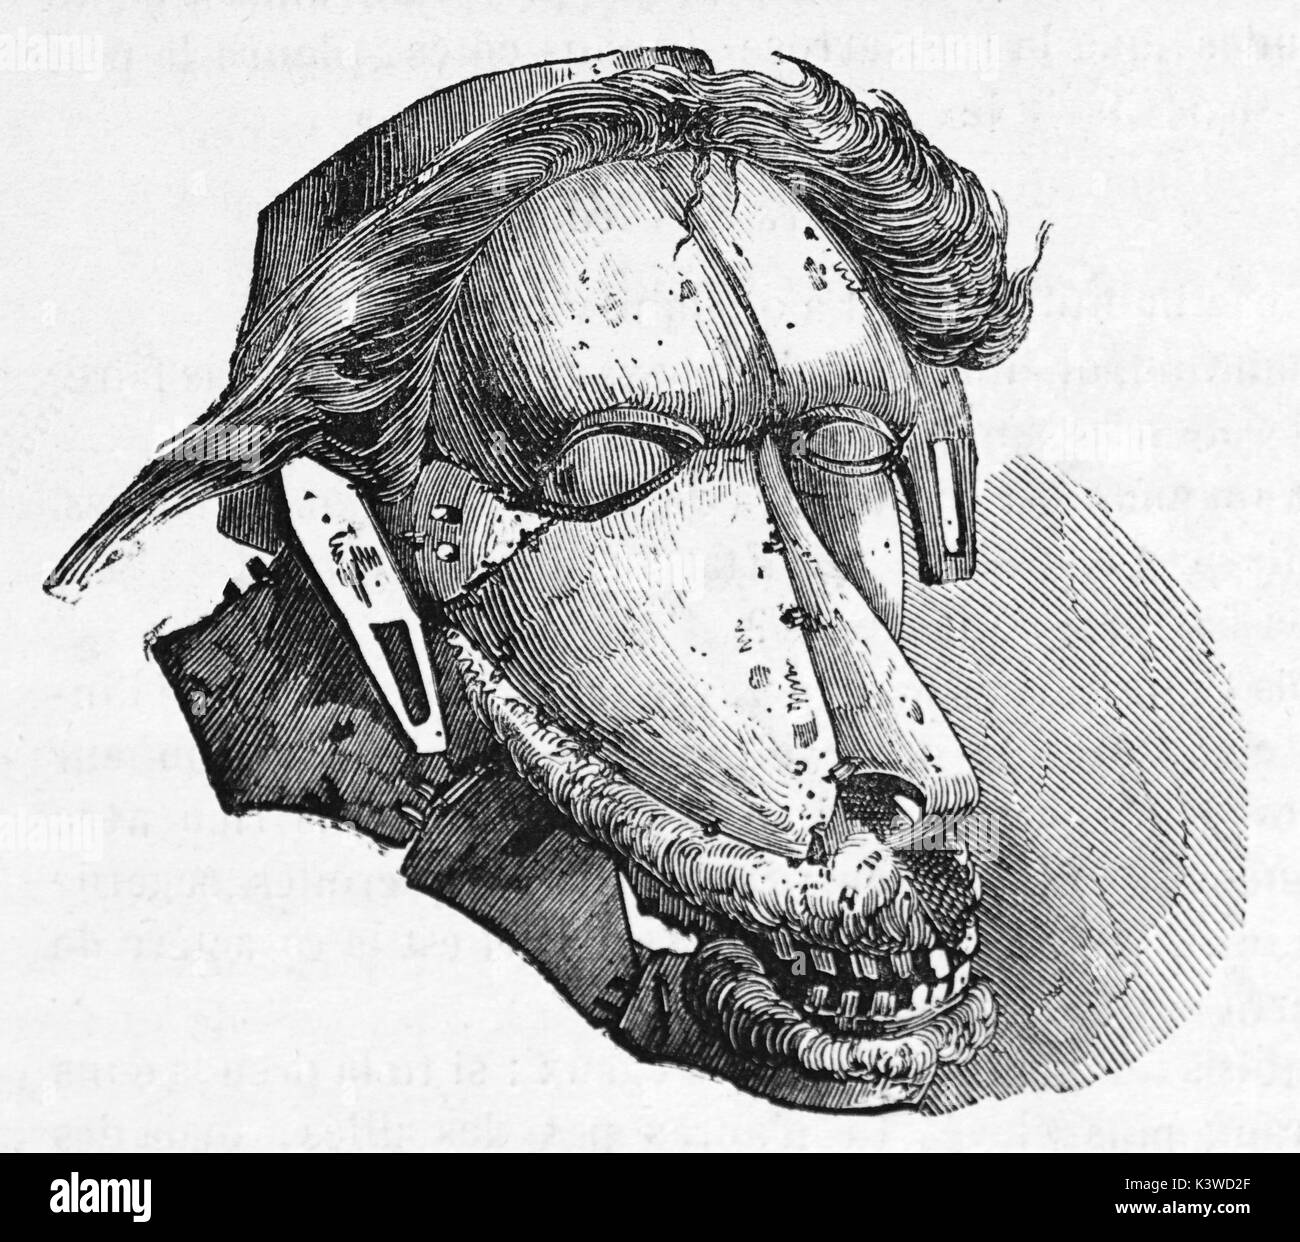 Vieille illustration d'un masque polynésien. Créé par Lebreton, publié le Magasin Pittoresque, Paris, 1841 Banque D'Images